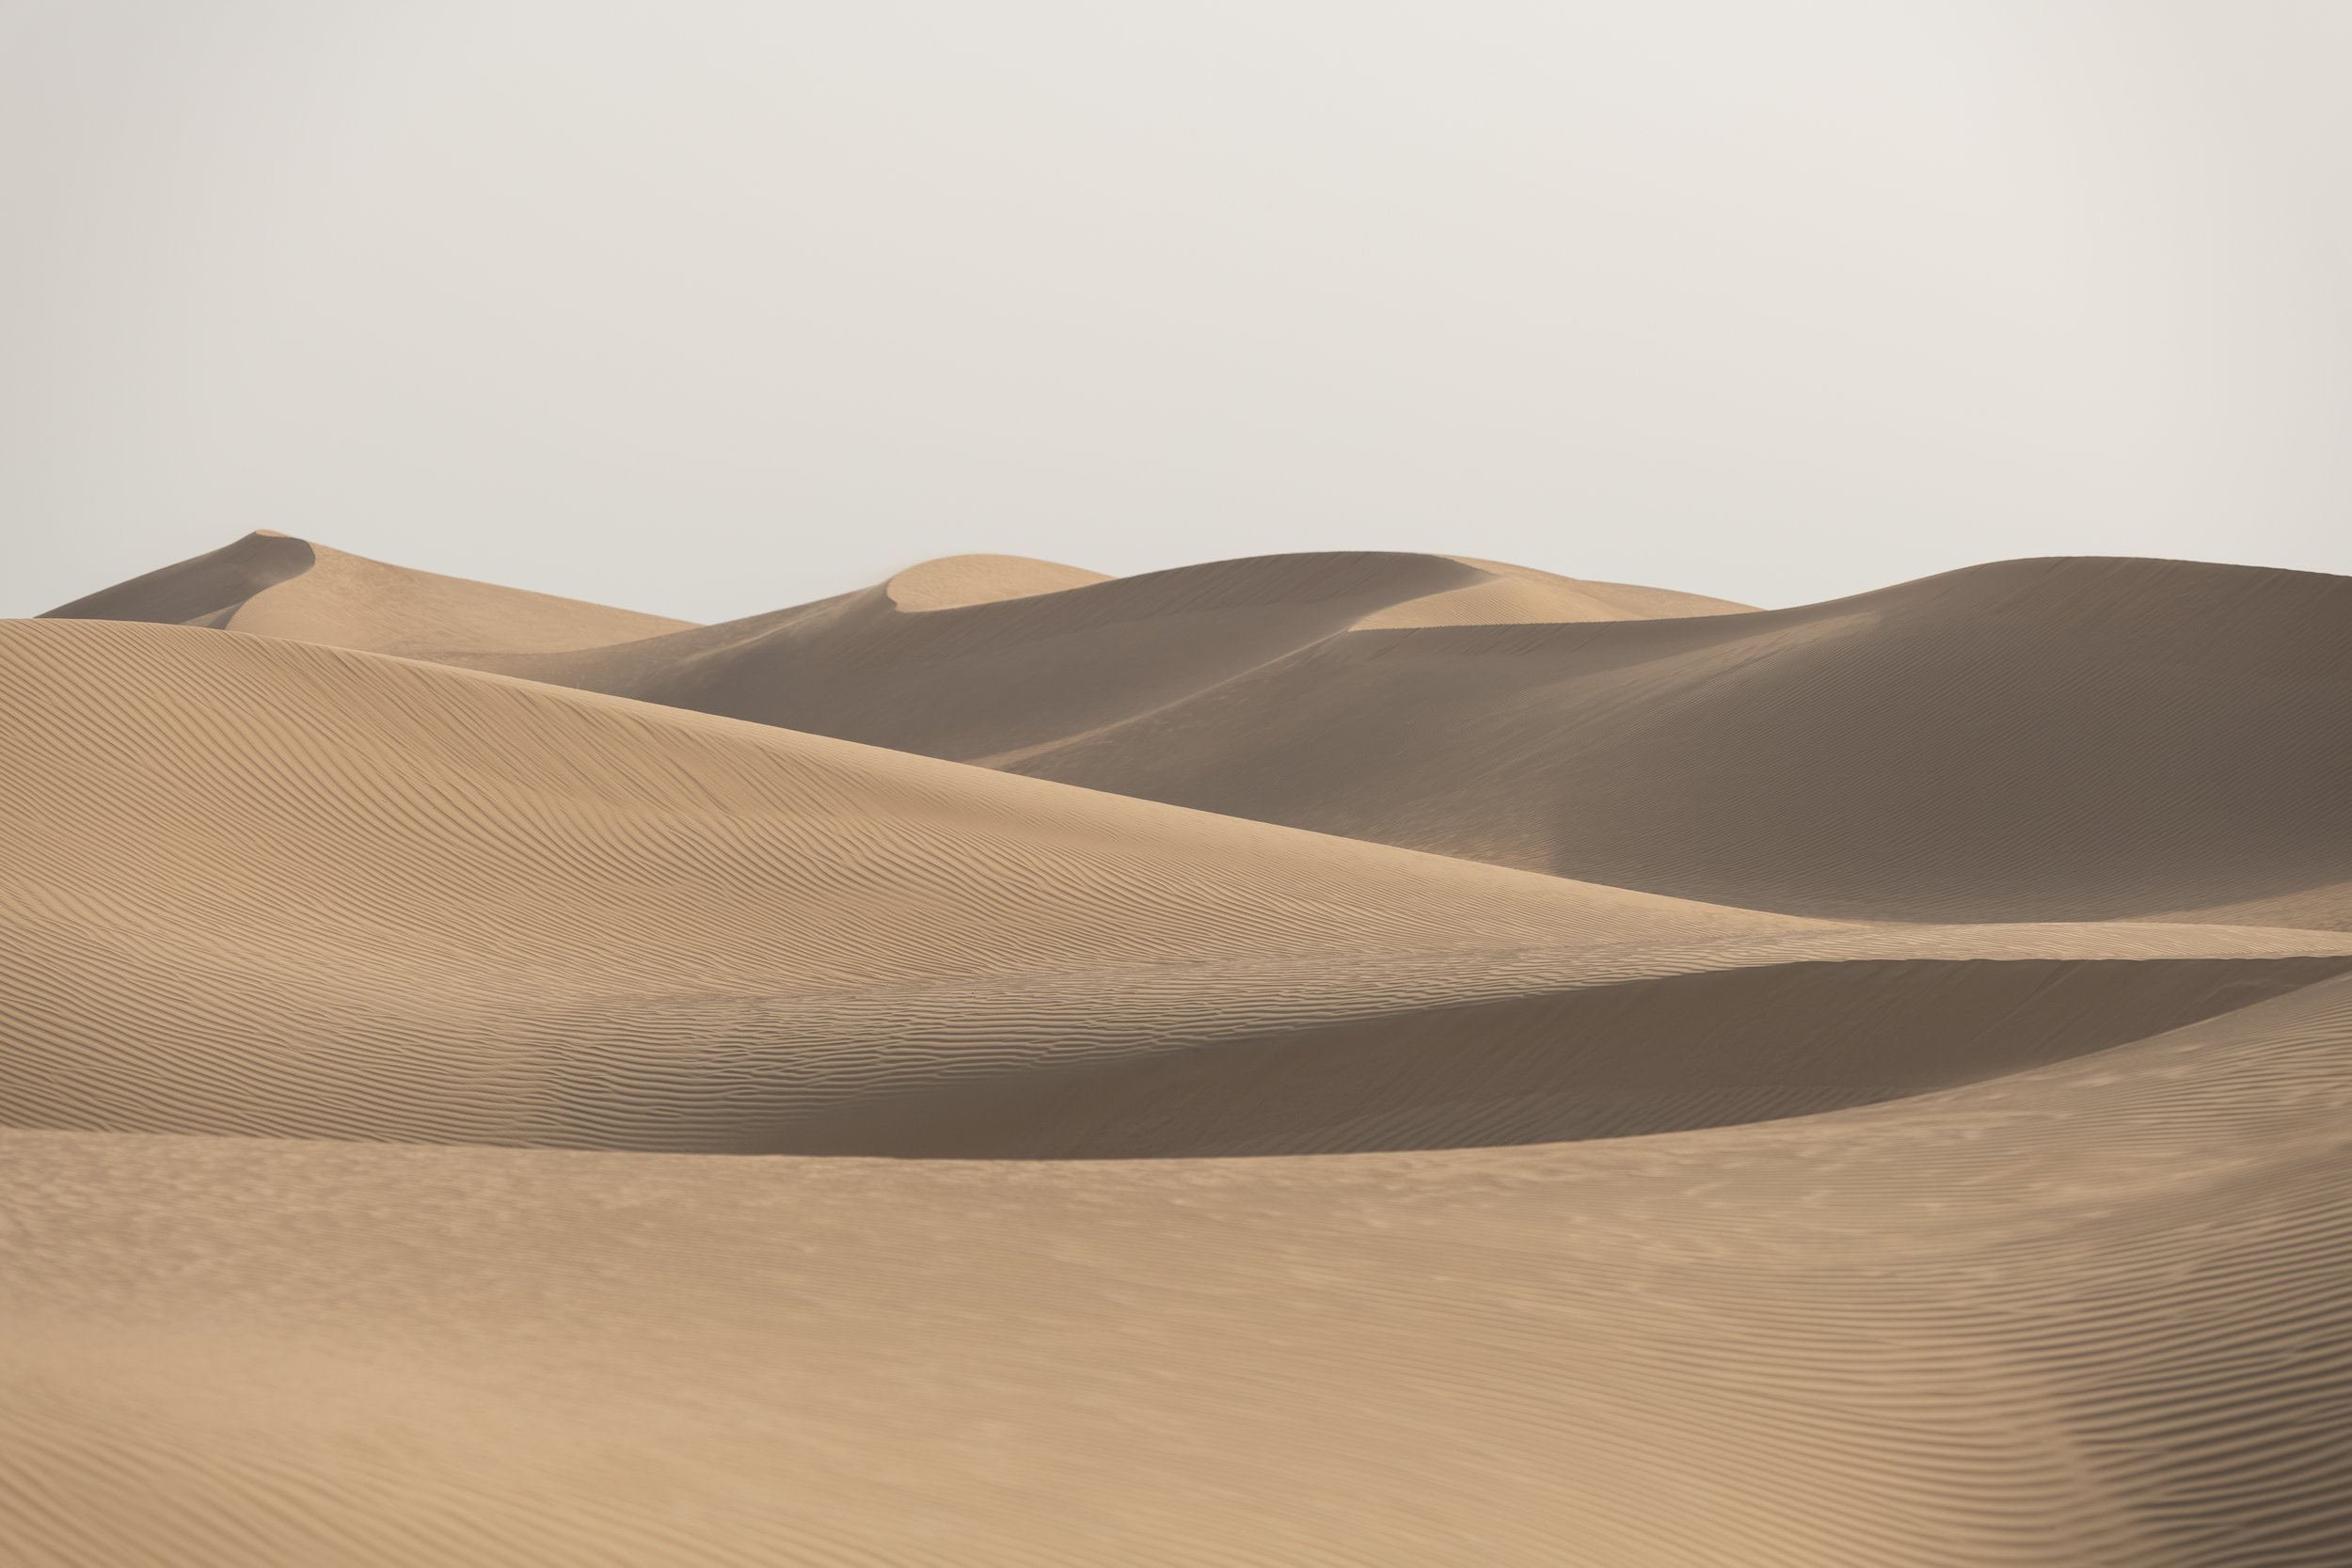 RF_BAS_Desert_Landscape_022_MASTER_NateleeCocks.JPG